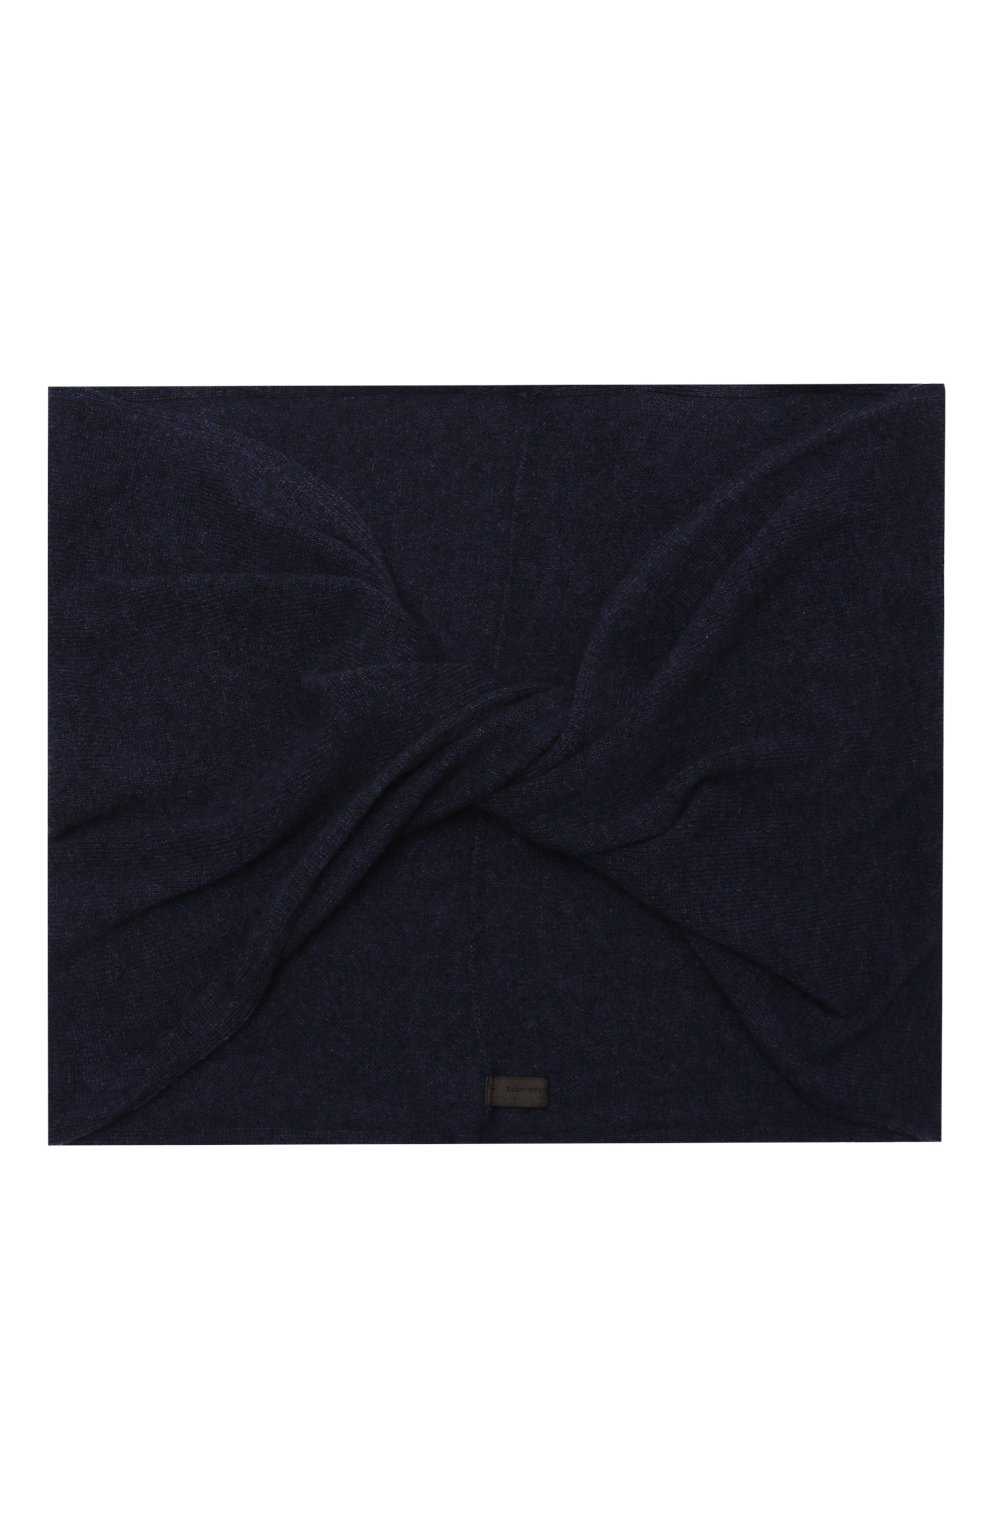 Женский кашемировый шарф-снуд TEGIN синего цвета, арт. 3169 | Фото 4 (Материал: Текстиль, Кашемир, Шерсть)